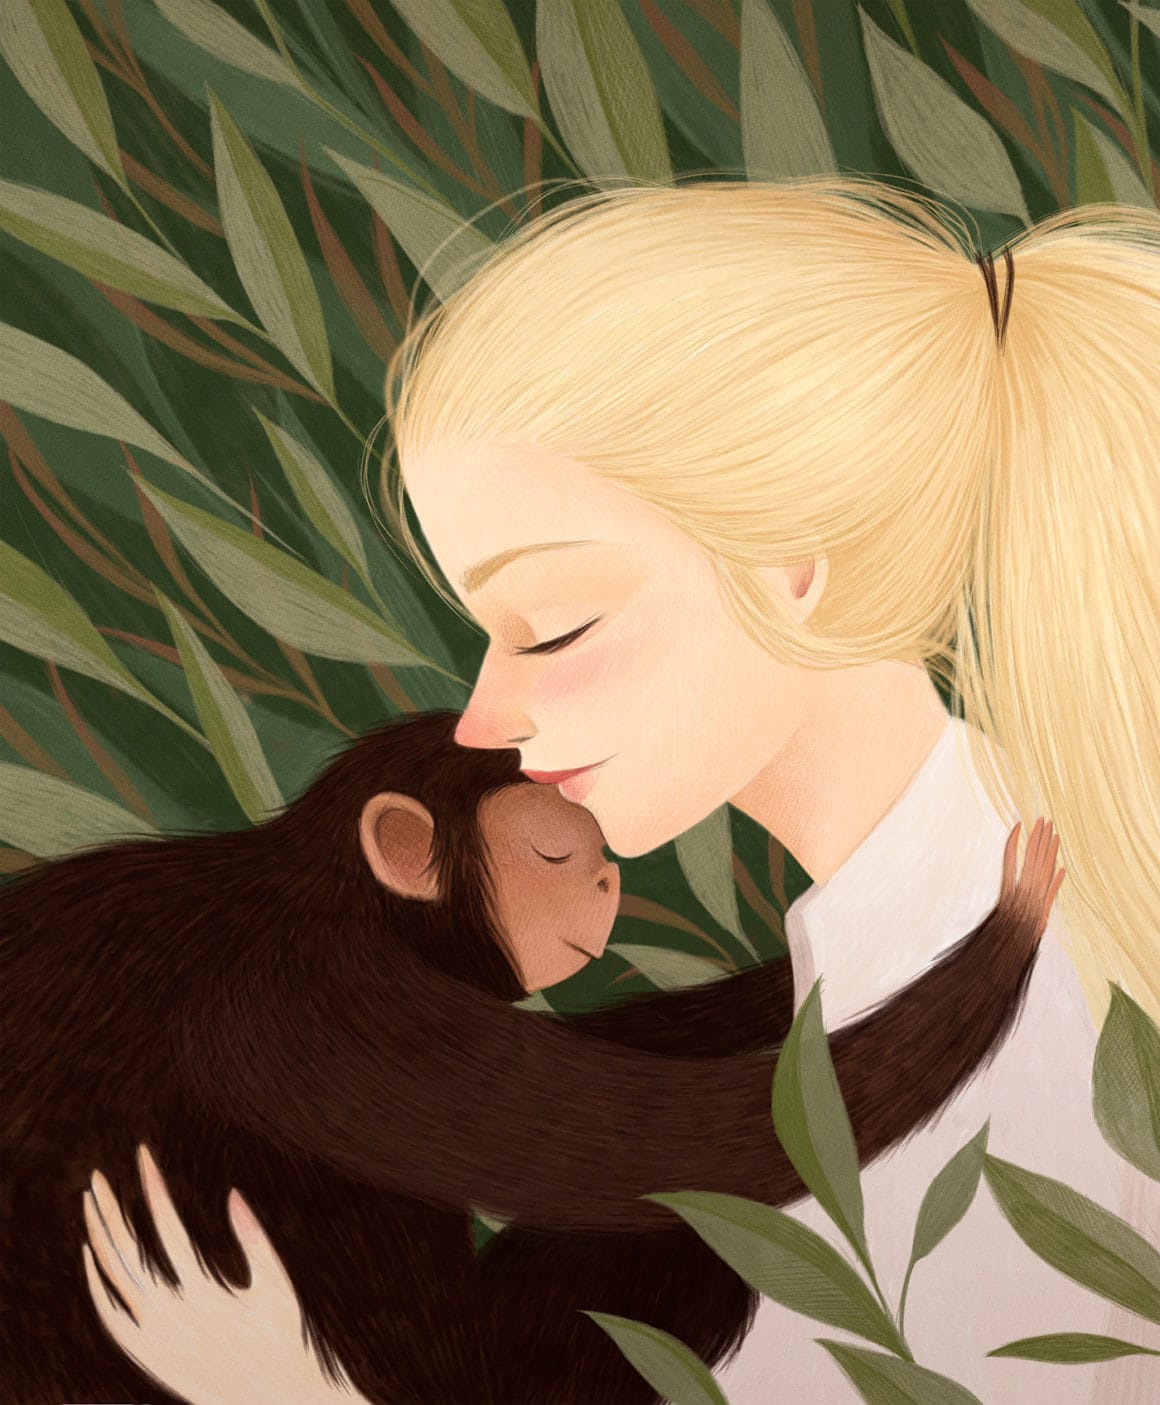 Jeune femme blonde et à la peau très claire qui serre contre elle un petit singe brun devant un fond de feuillage.